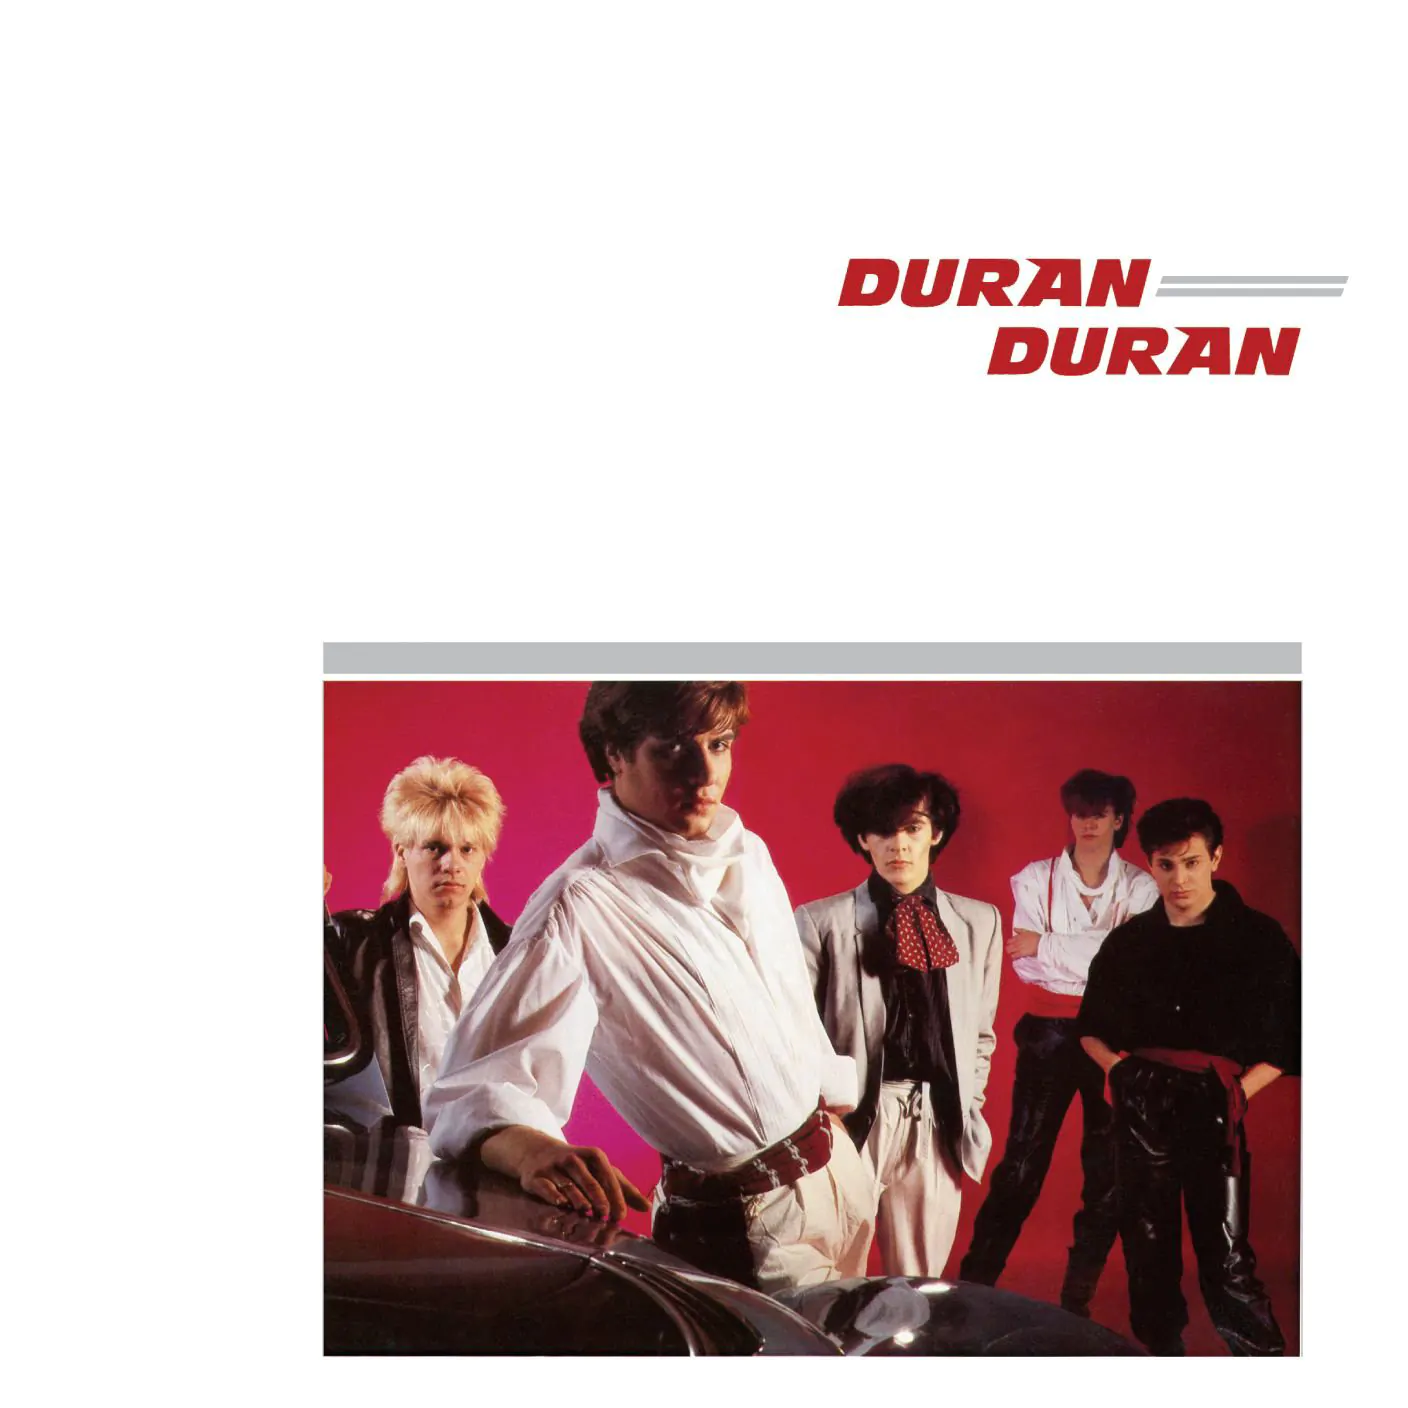 CLASSIC ALBUM: Duran Duran – Duran Duran